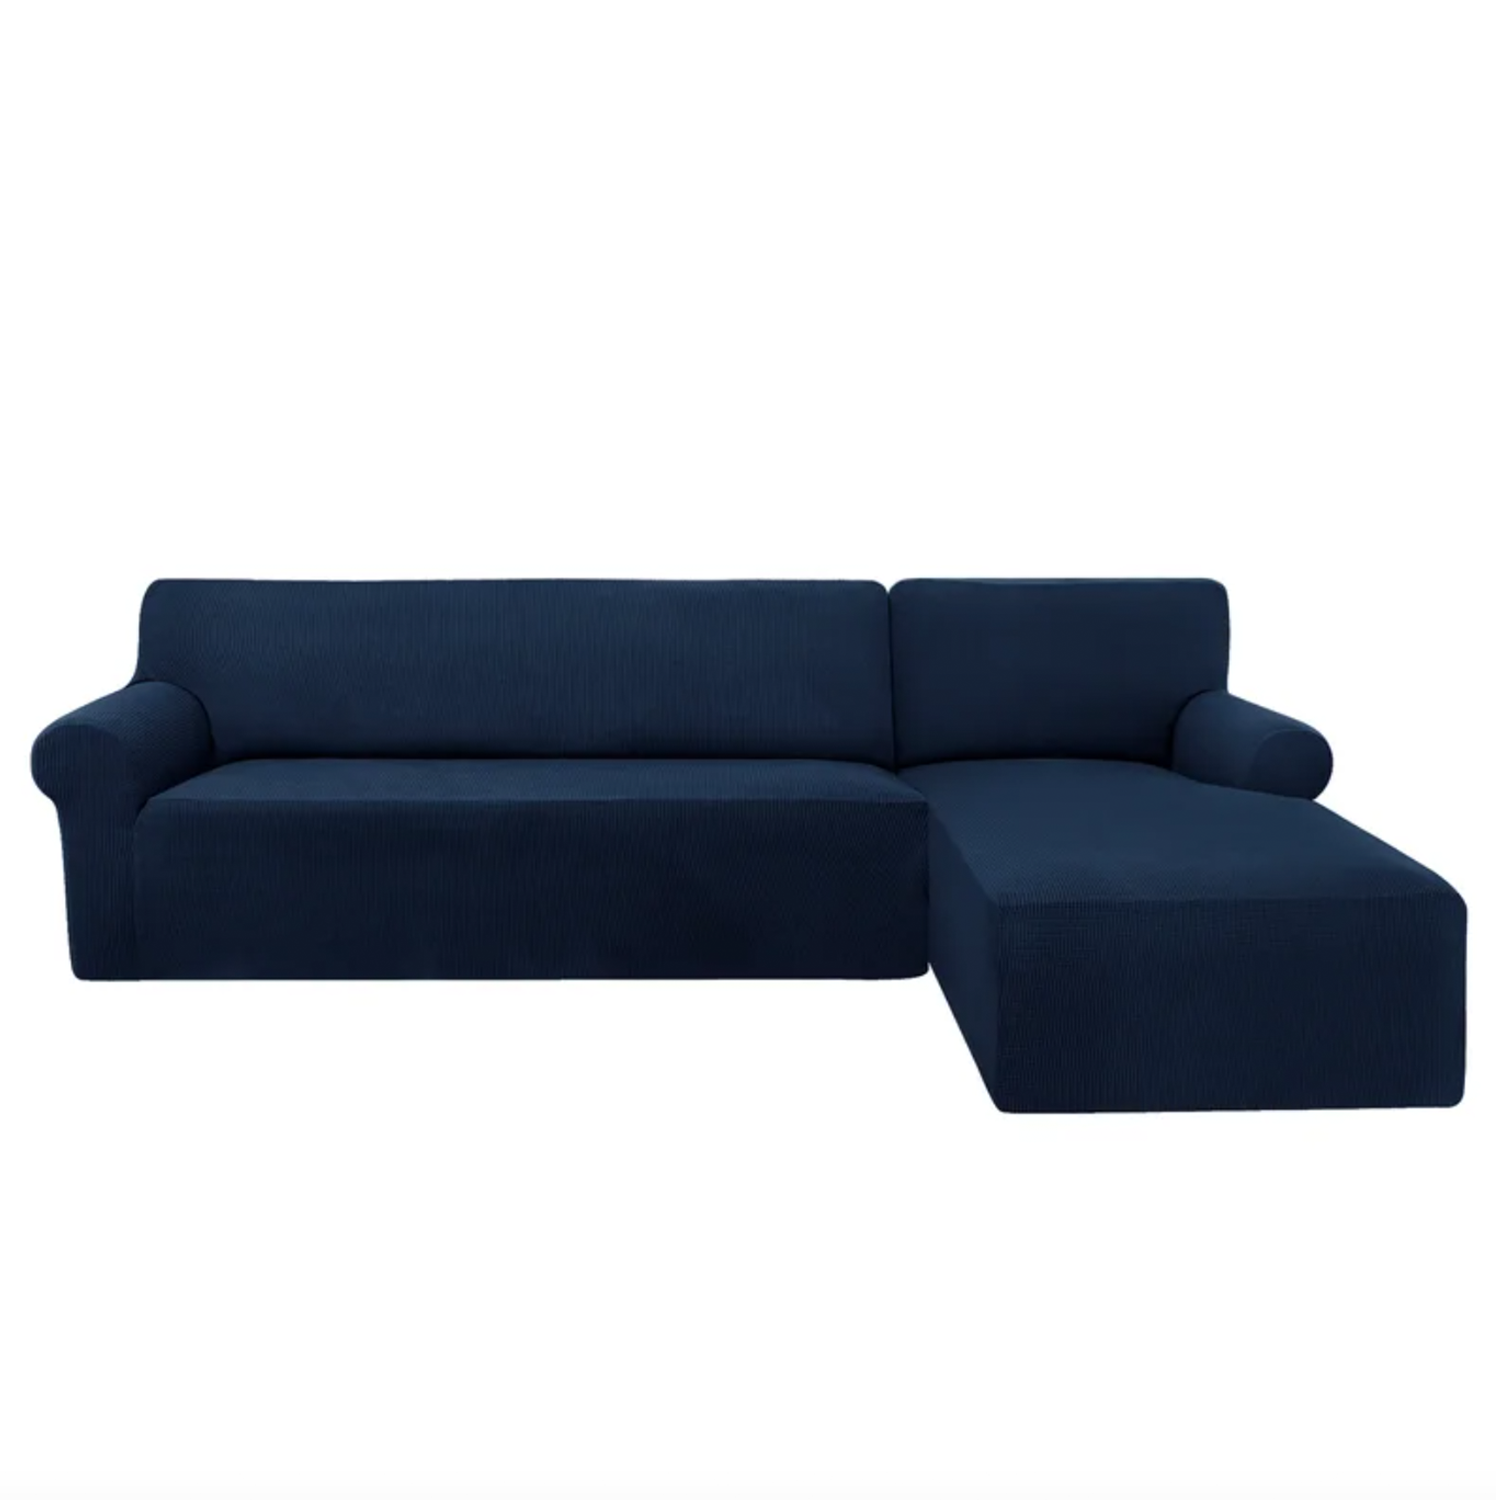 Navy Blue velvet couch cover